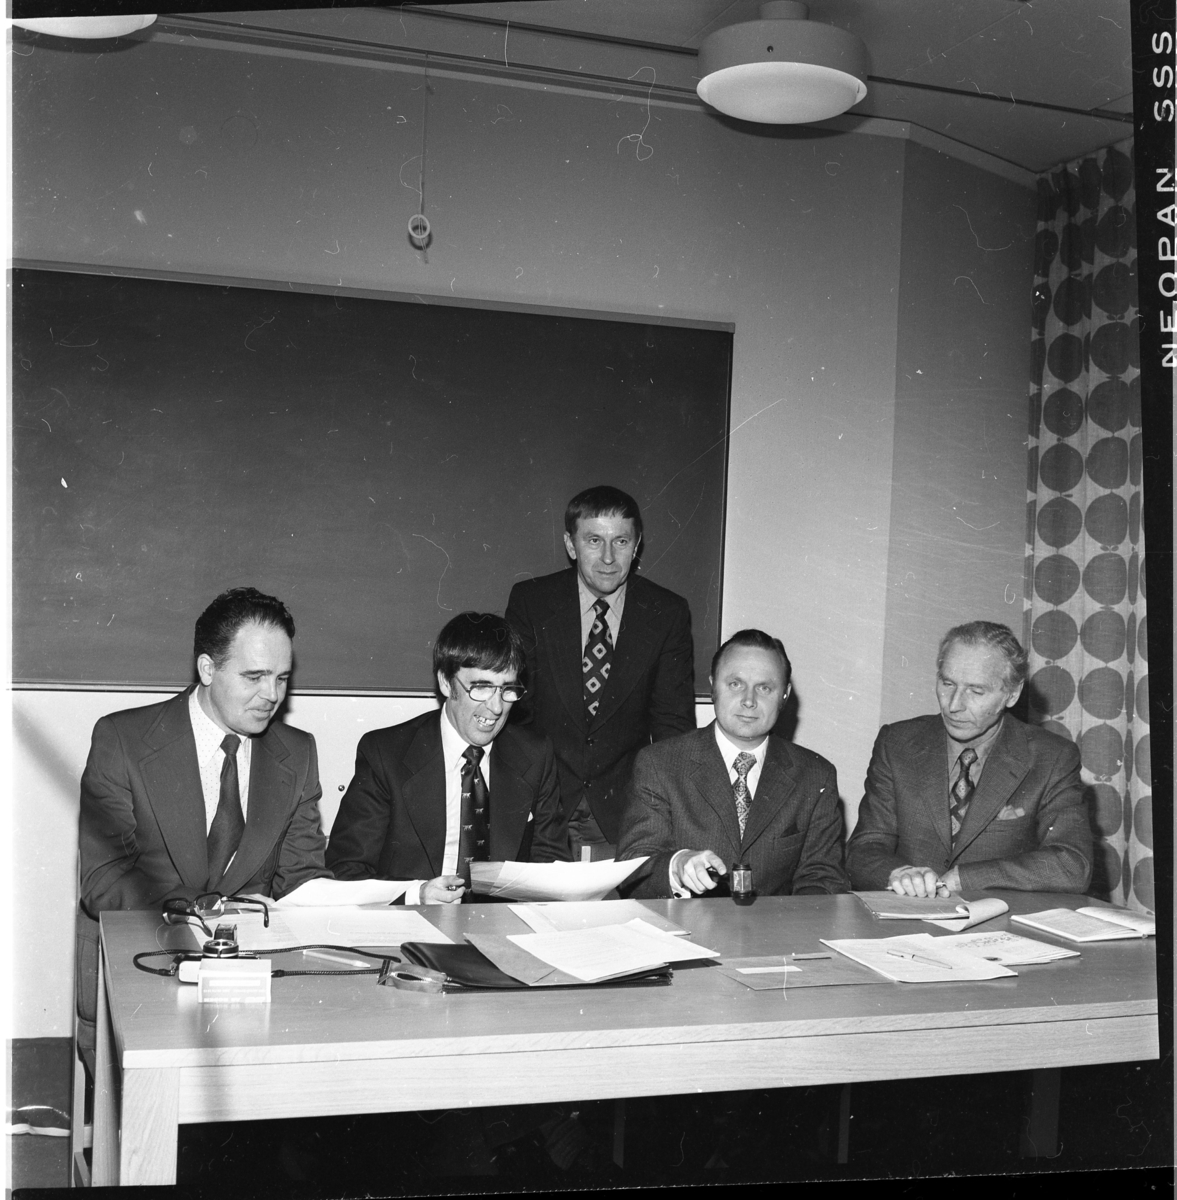 Fyra kostymklädda män sitter vid ett bord med papper framför sig, en håller en ordförandeklubba i handen. En femte man står bakom dem. De är sittande fr v: Ingemar Lago, Tom Sonesson, Allan Svensson samt Edvin Tollén.